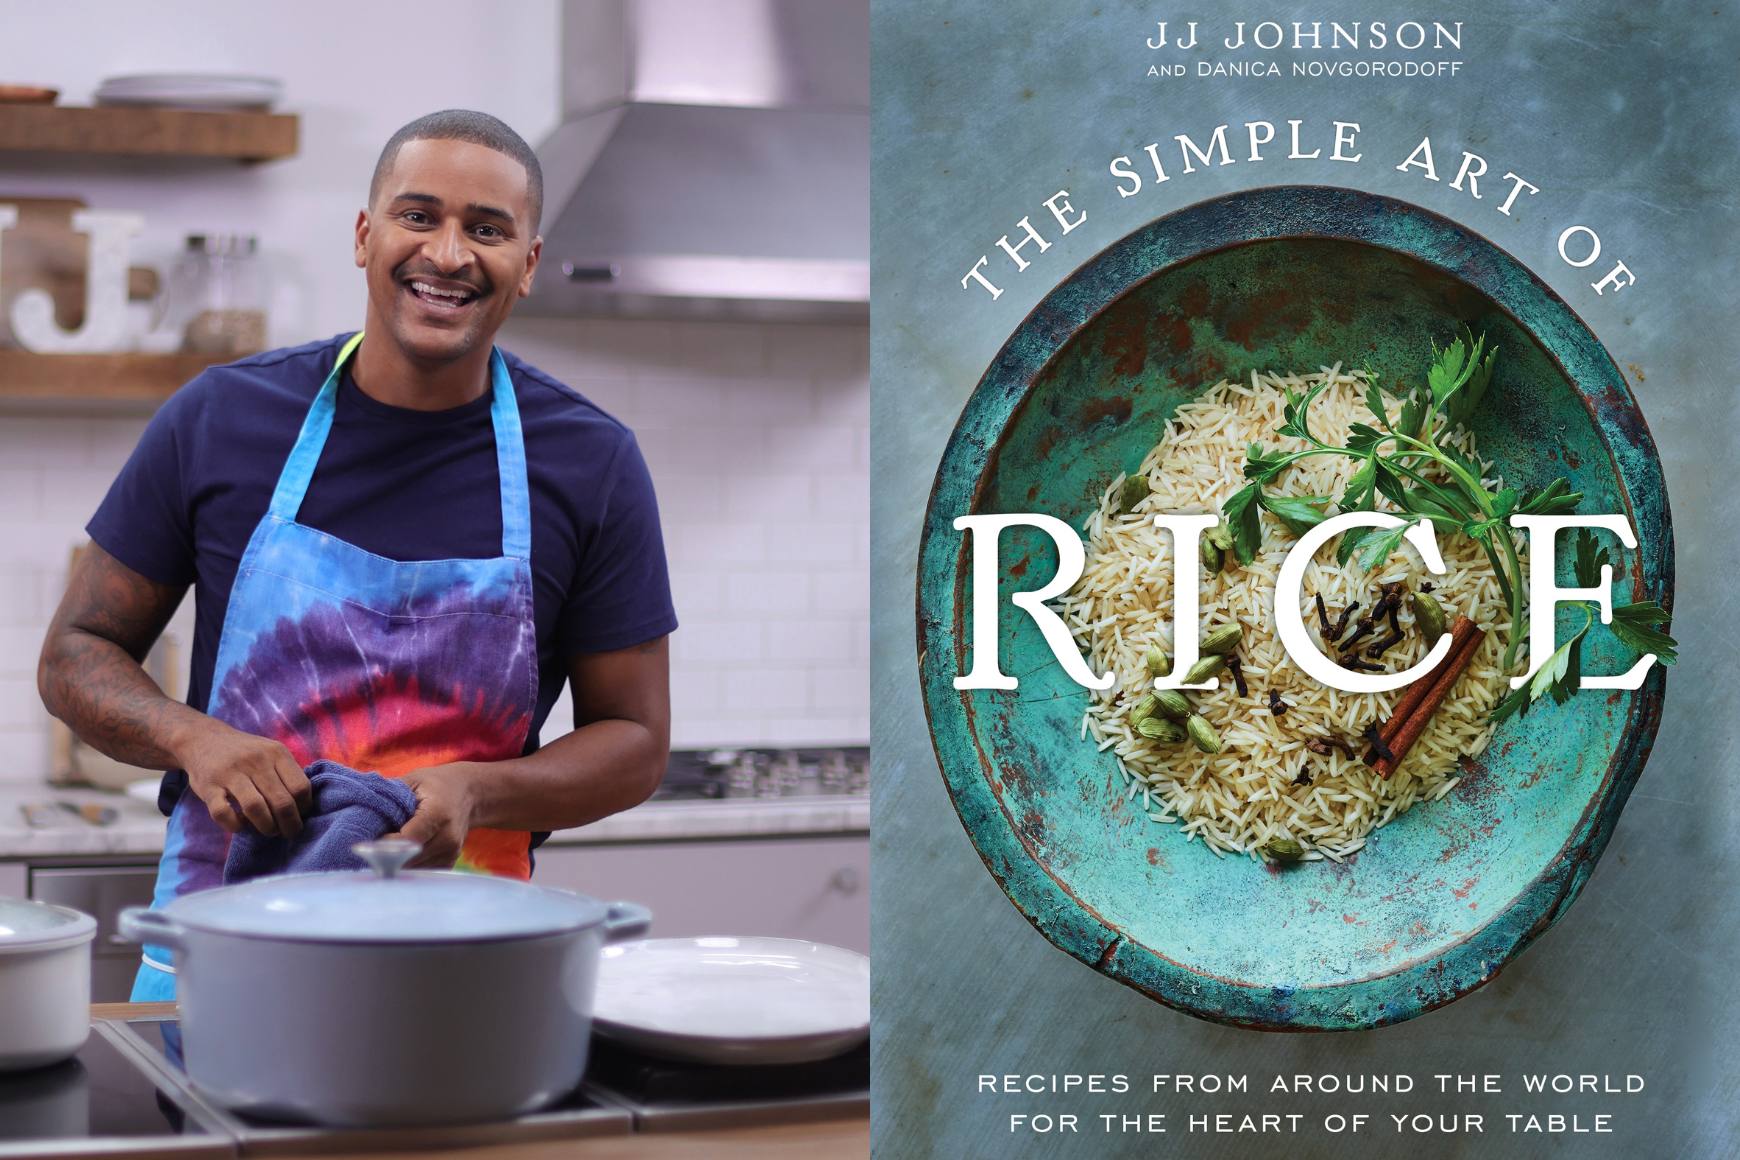 “米饭的简单艺术”书画拼贴画旁边是主厨 JJ 穿着彩虹扎染围裙站在厨房里微笑的照片。